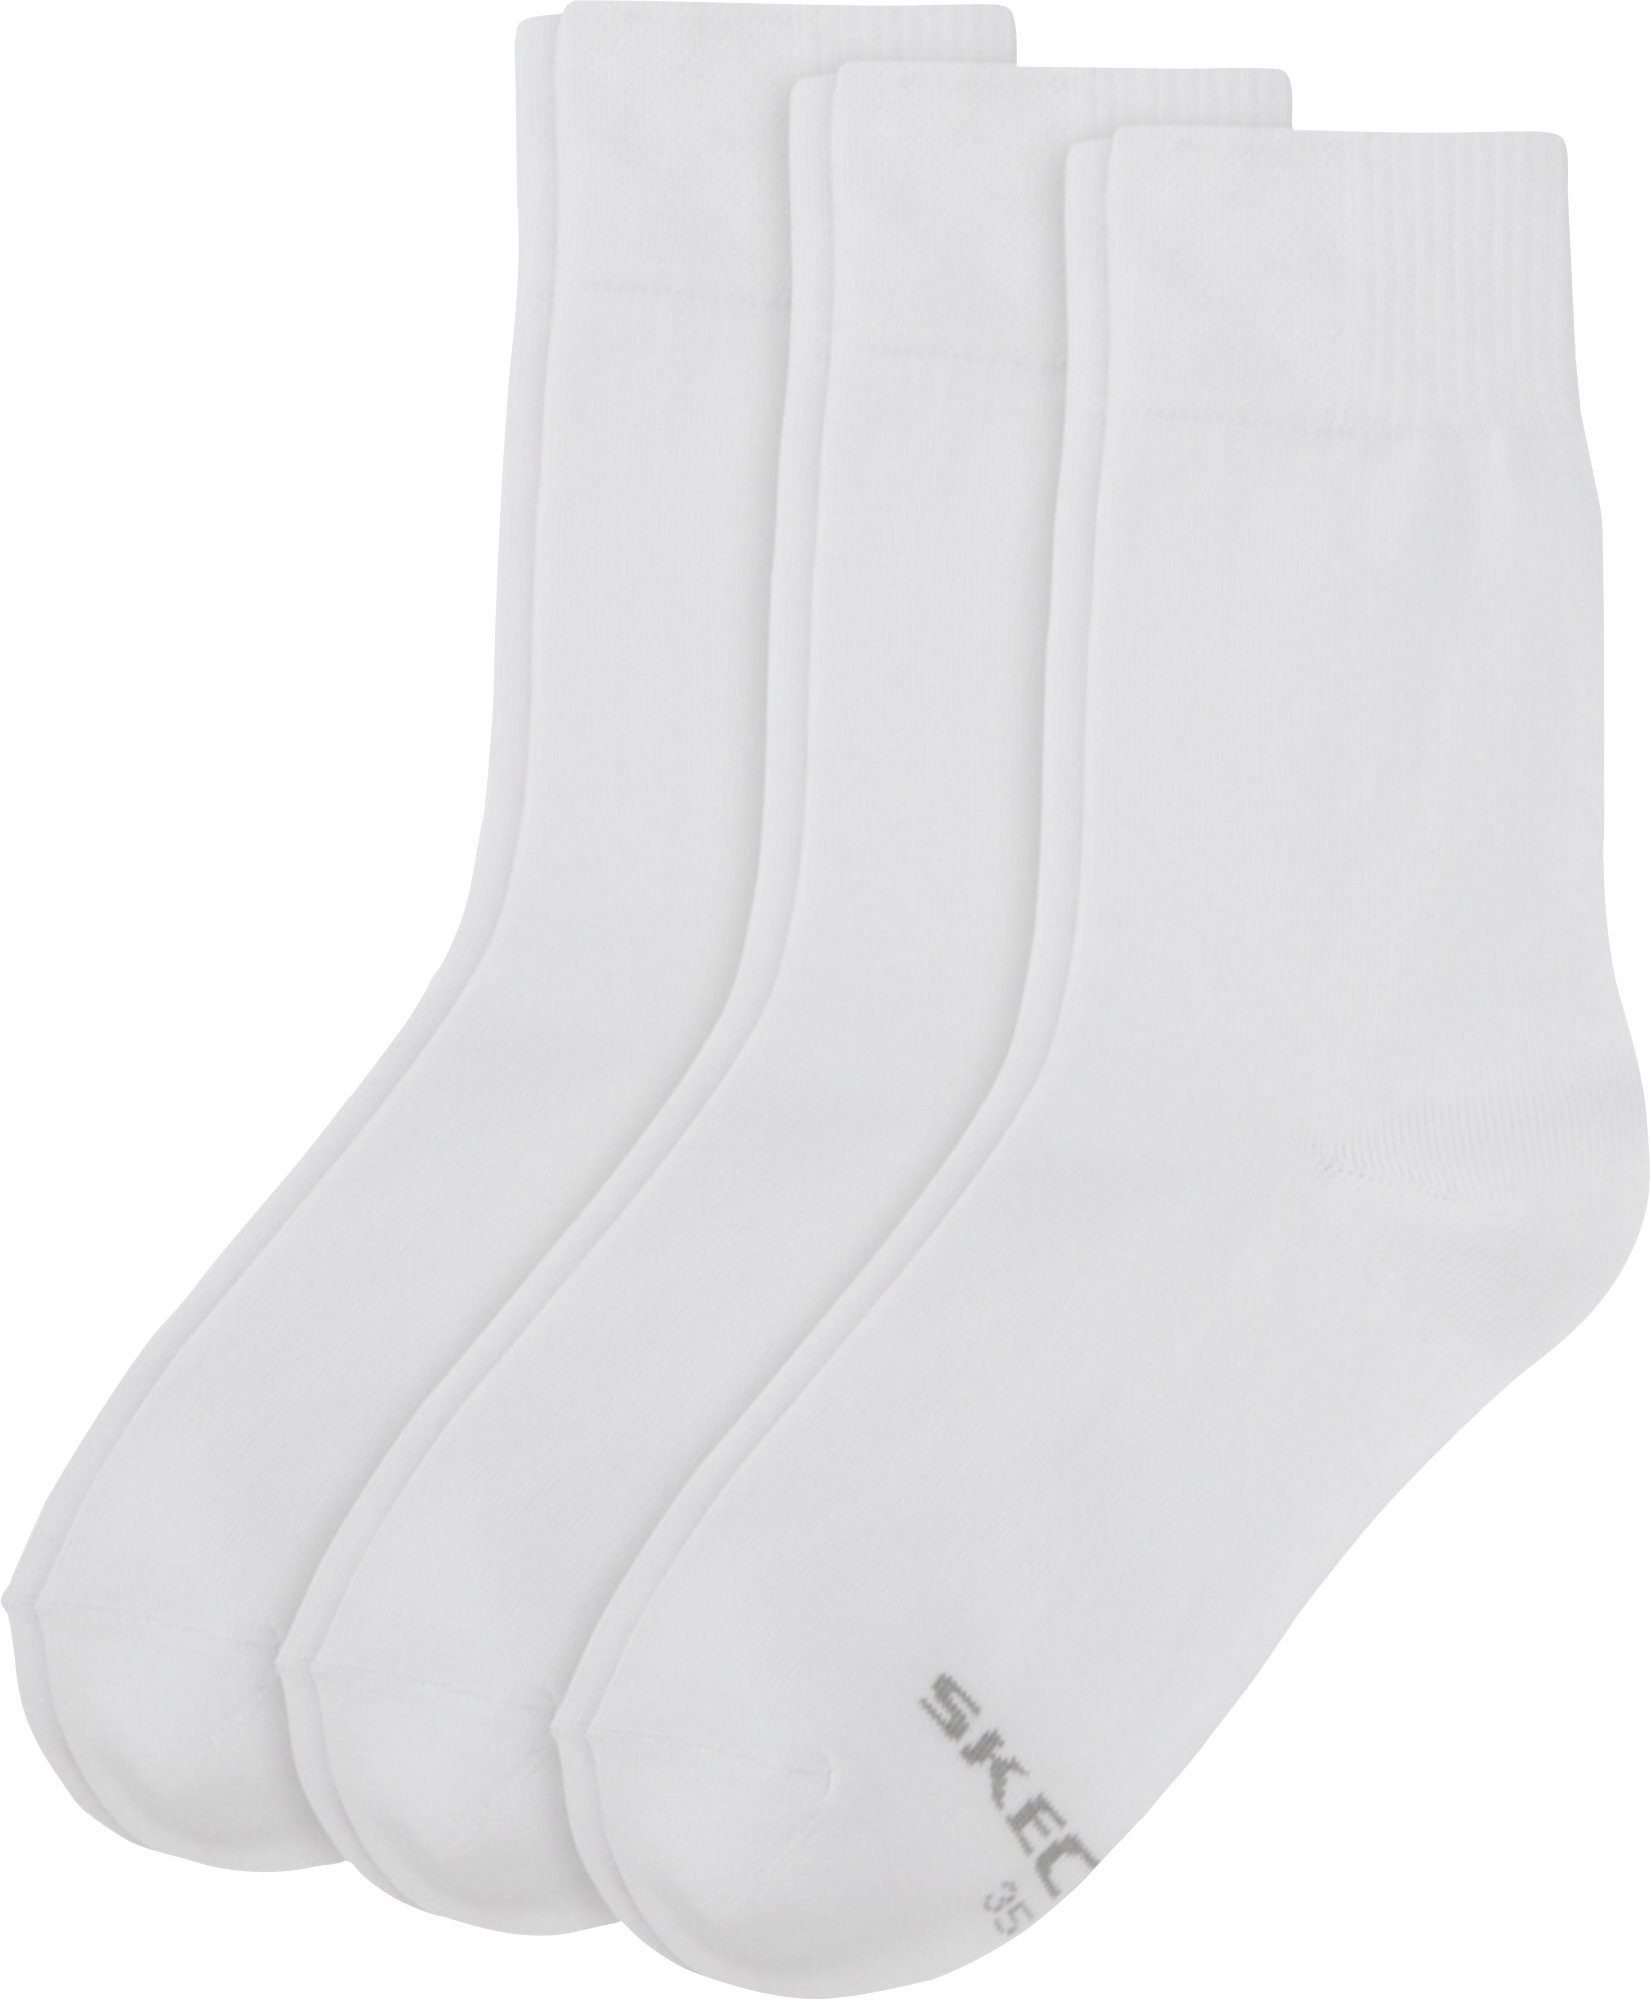 3 weiß Paar Damen-Socken Socken Skechers Uni